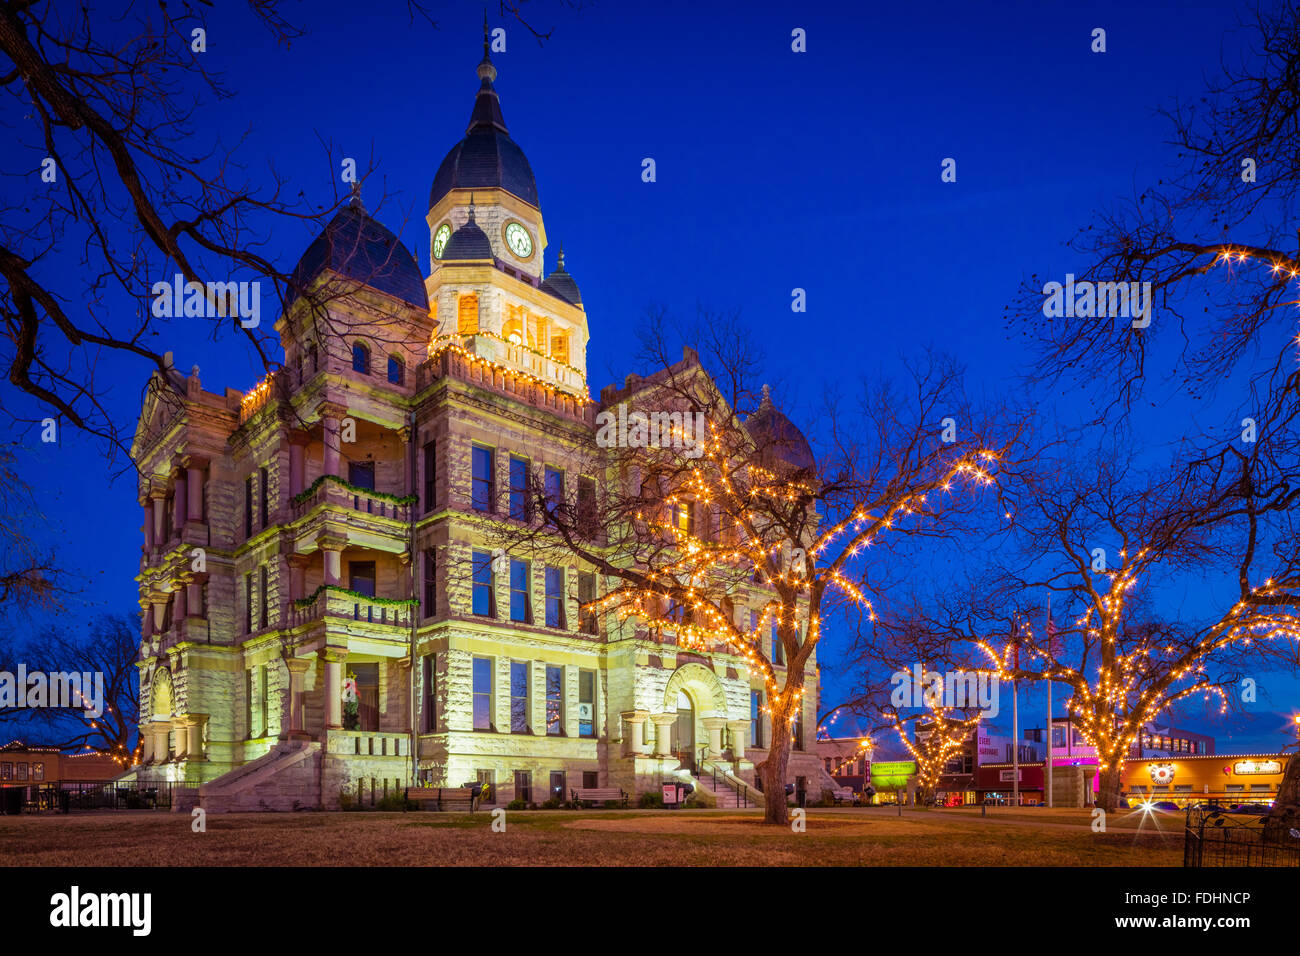 Denton, Texas Courthouse at Night Stock Photo